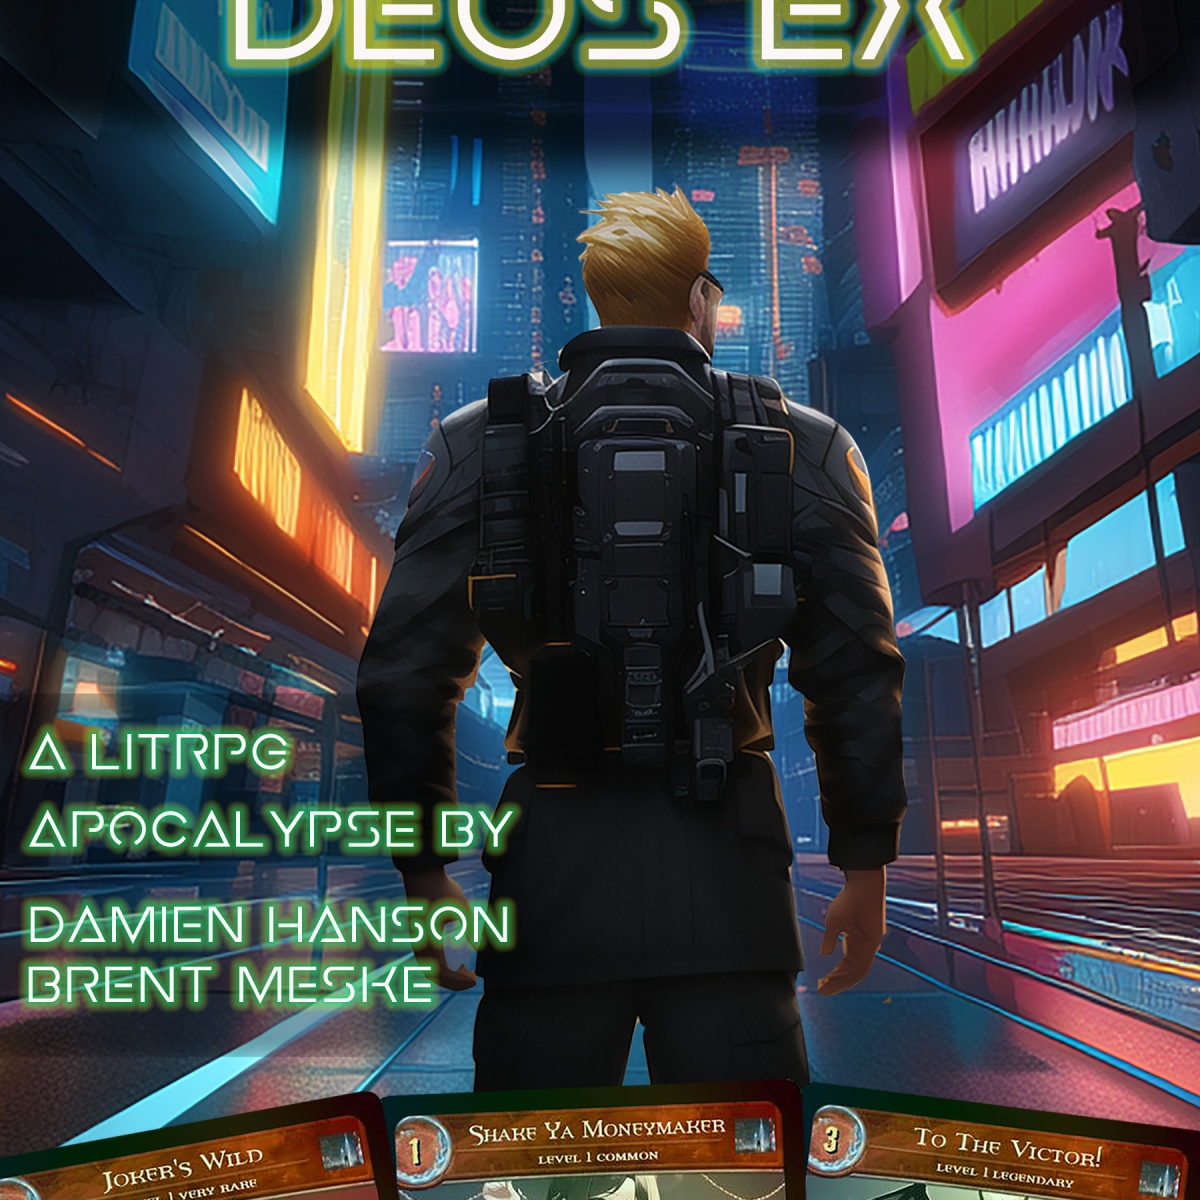 Ascension: Deus Ex